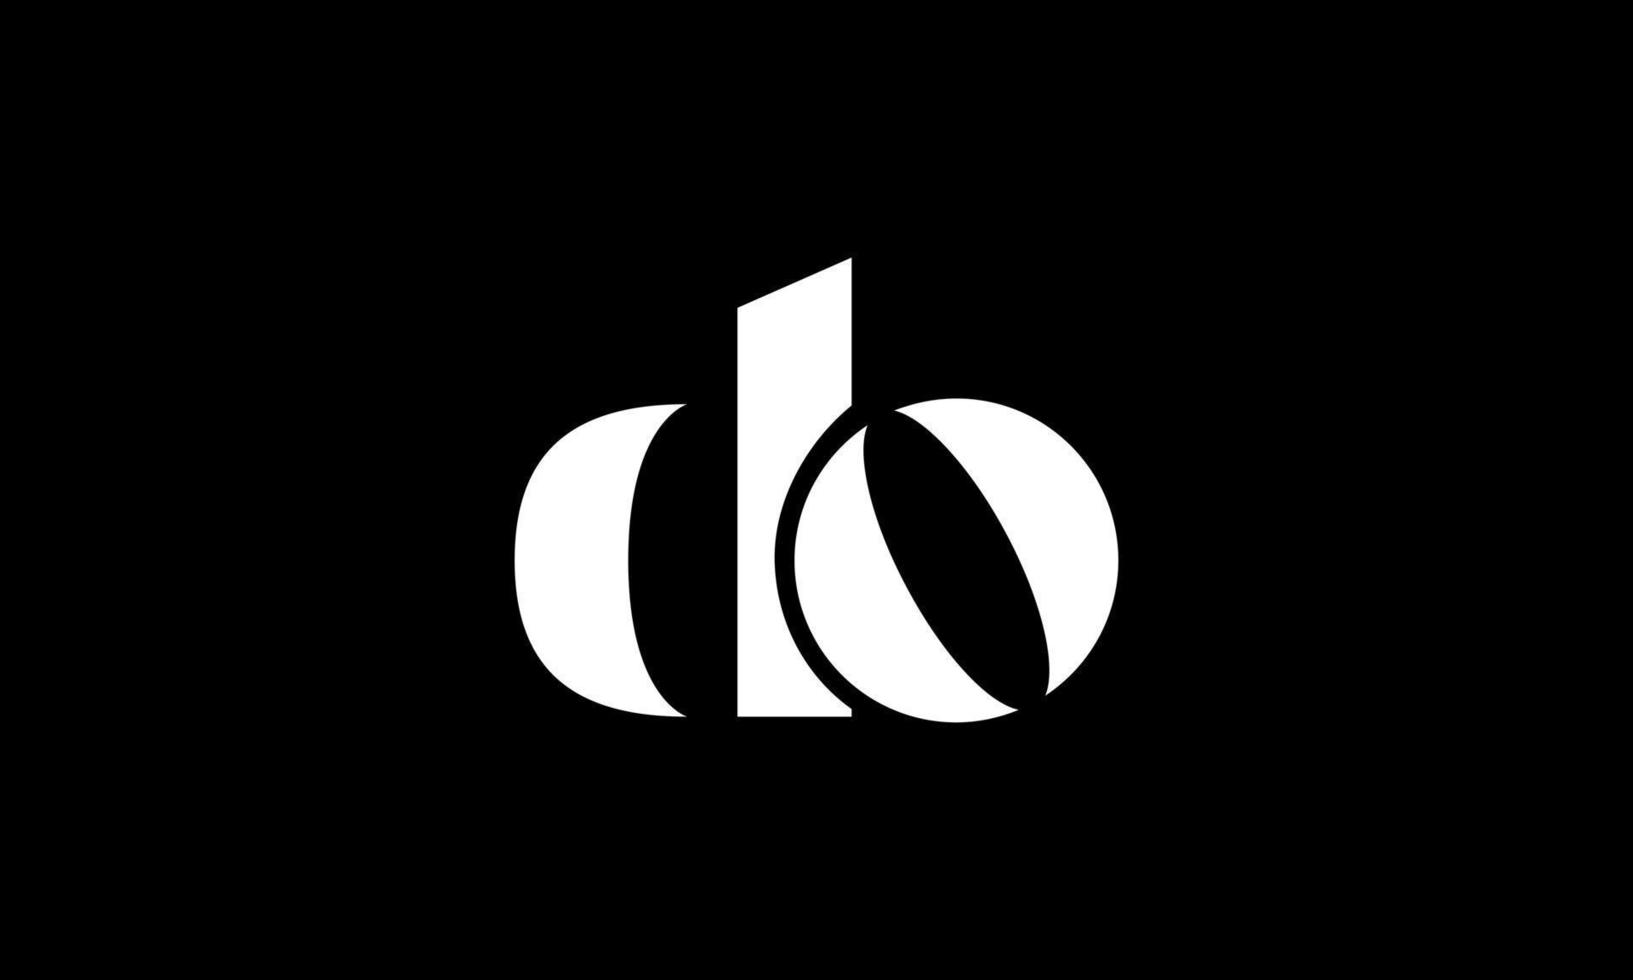 lettre initiale do création de logo sur fond noir. vecteur professionnel.